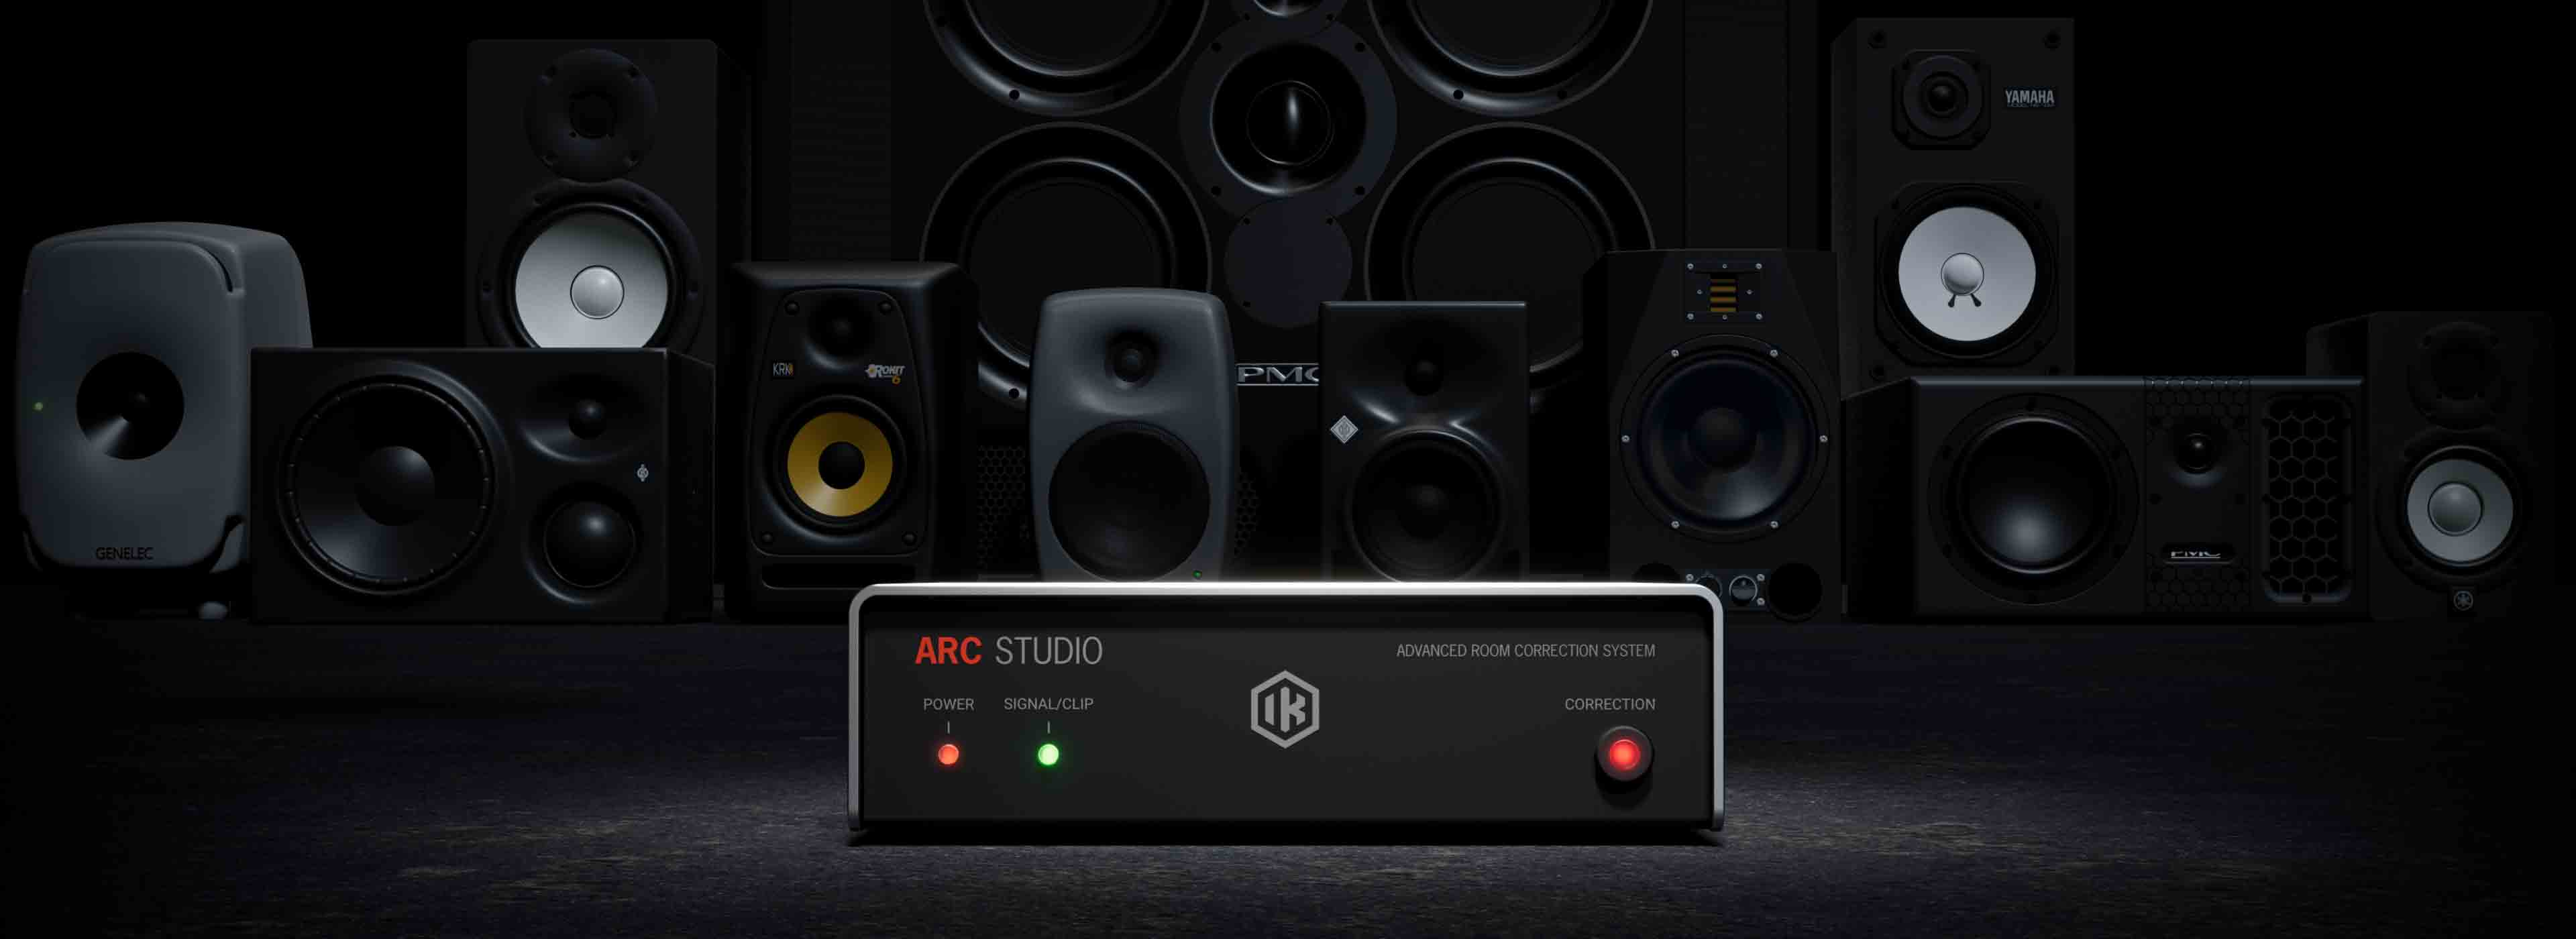 Introducing ARC Studio